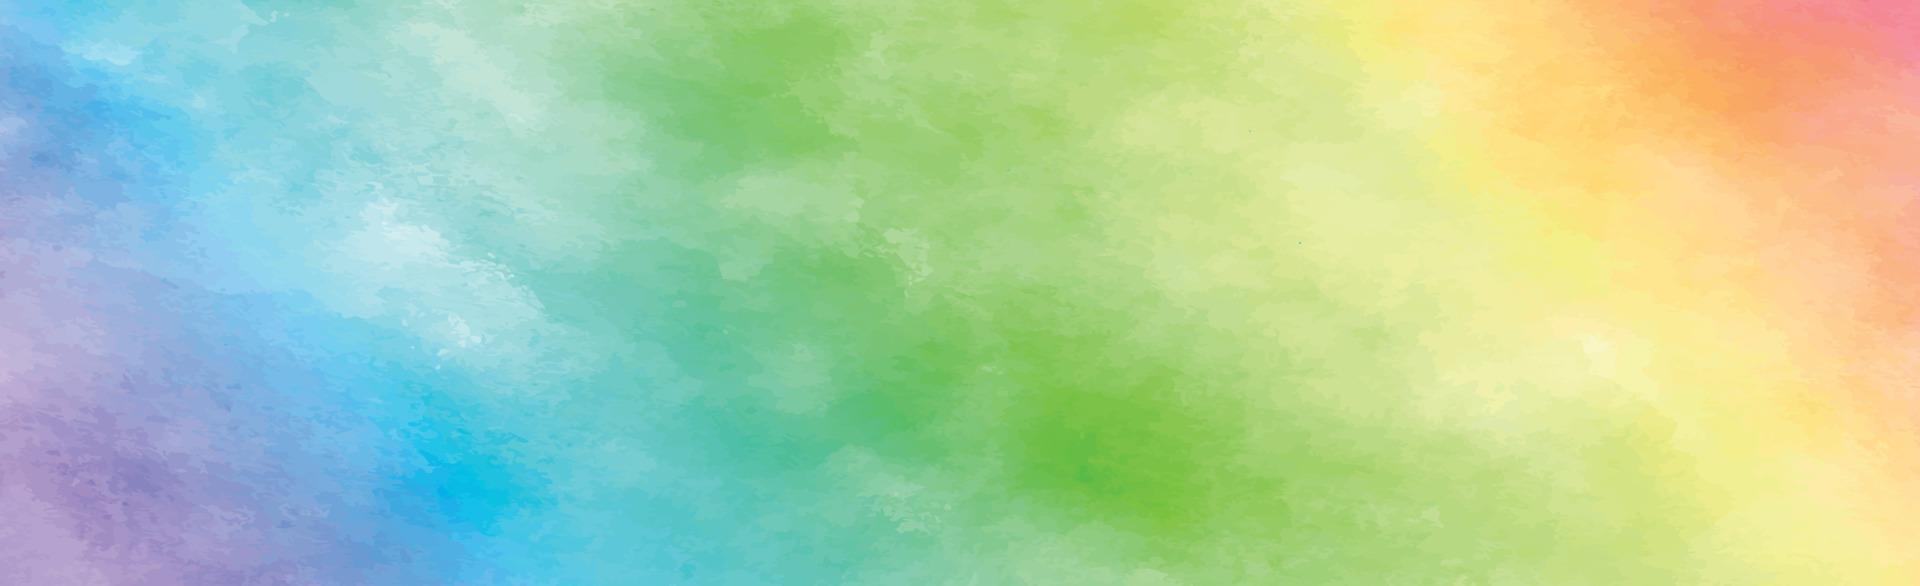 trama panoramica dell'acquerello multicolore realistico su sfondo bianco - vettore